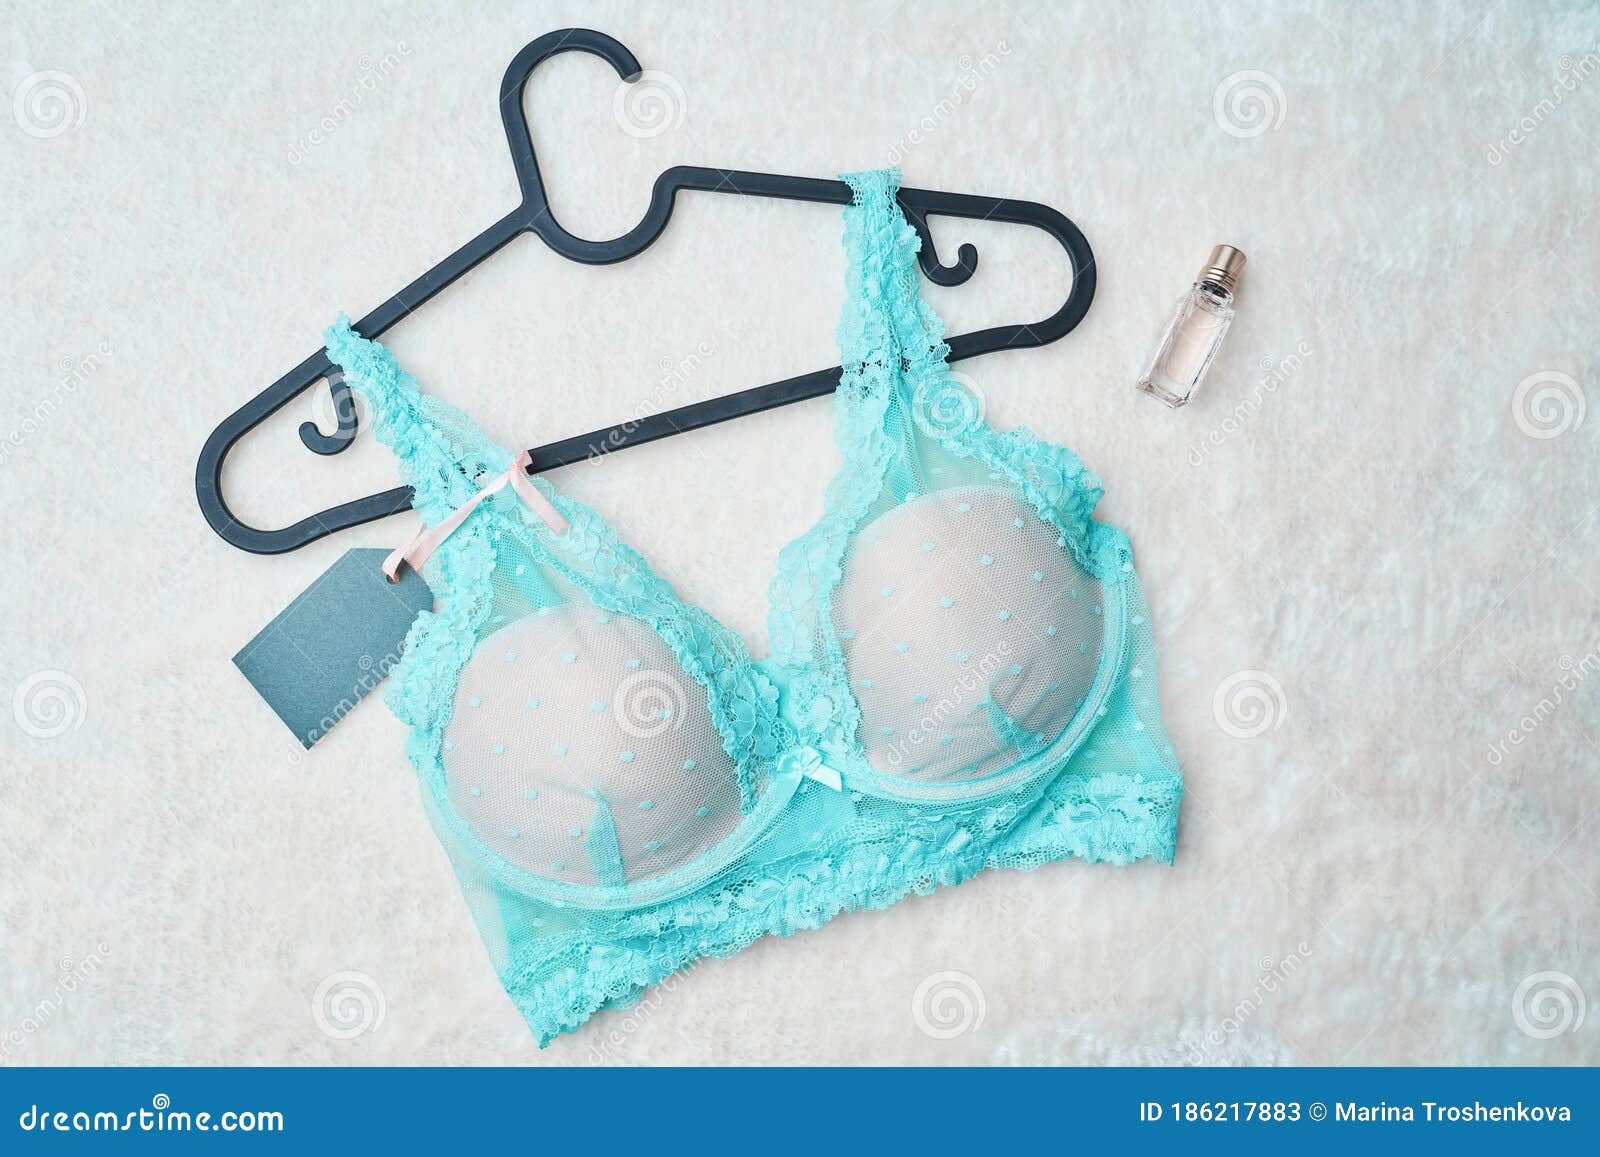 Turquoise Female Bra Underwear Stock Image - Image of glamour, lady: 186217883